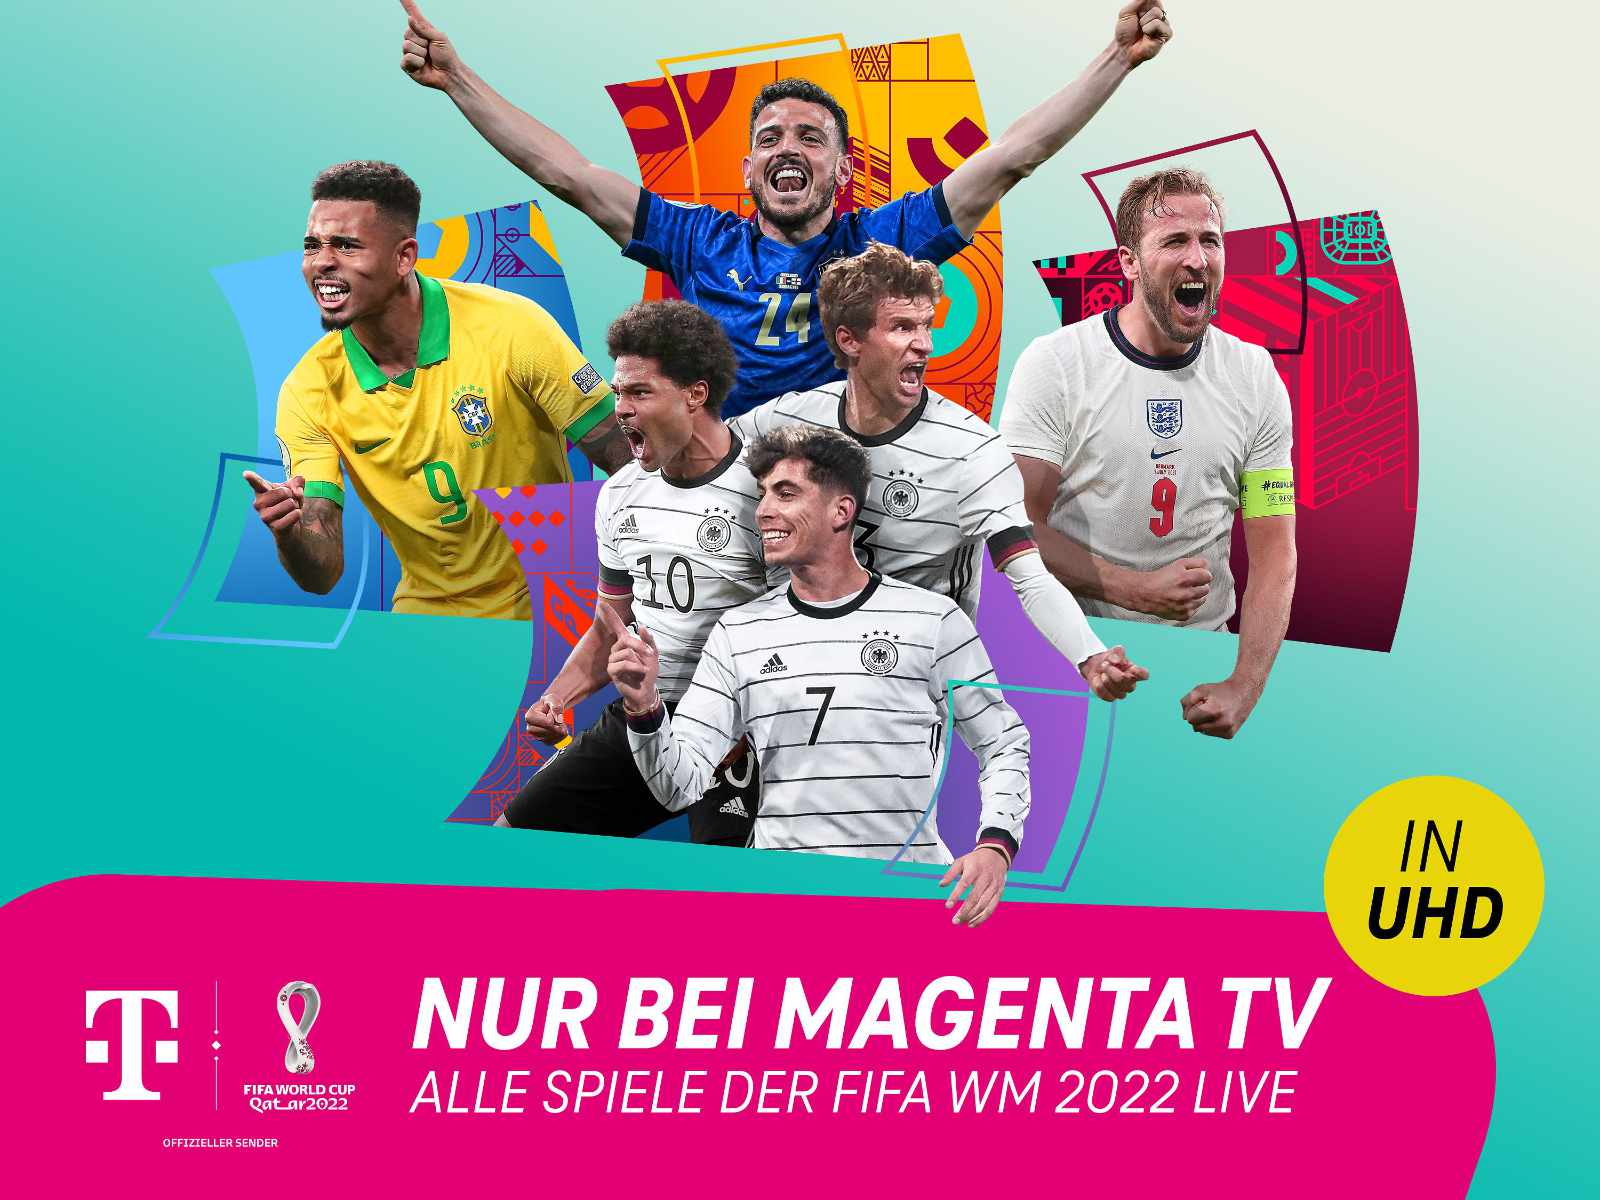 FIFA WM 2022 Alle Spiele live und in 4K bei MagentaTV